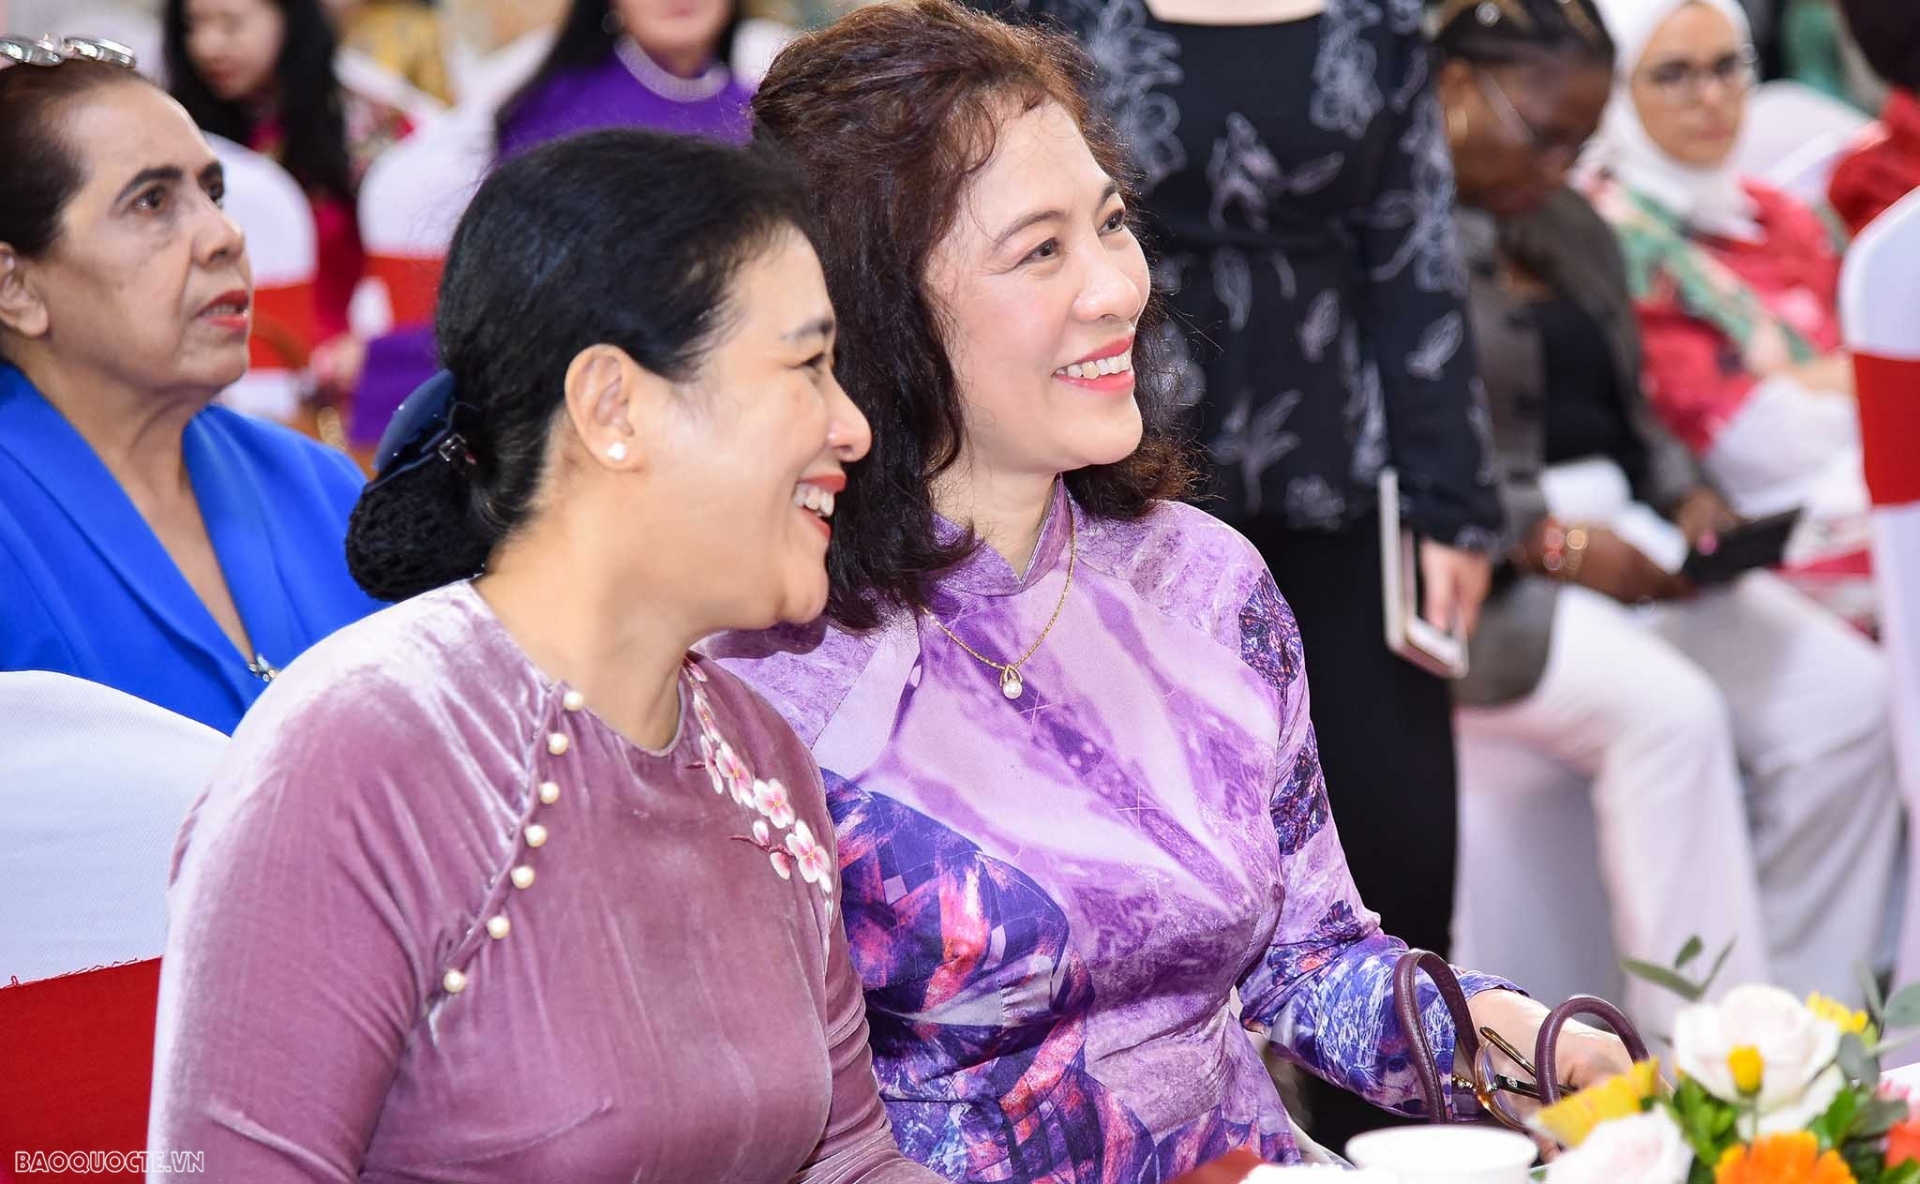 外交部部长夫人、东盟共同体妇女小组主任武氏碧玉与越南友好组织联合会主席阮芳娥大使。